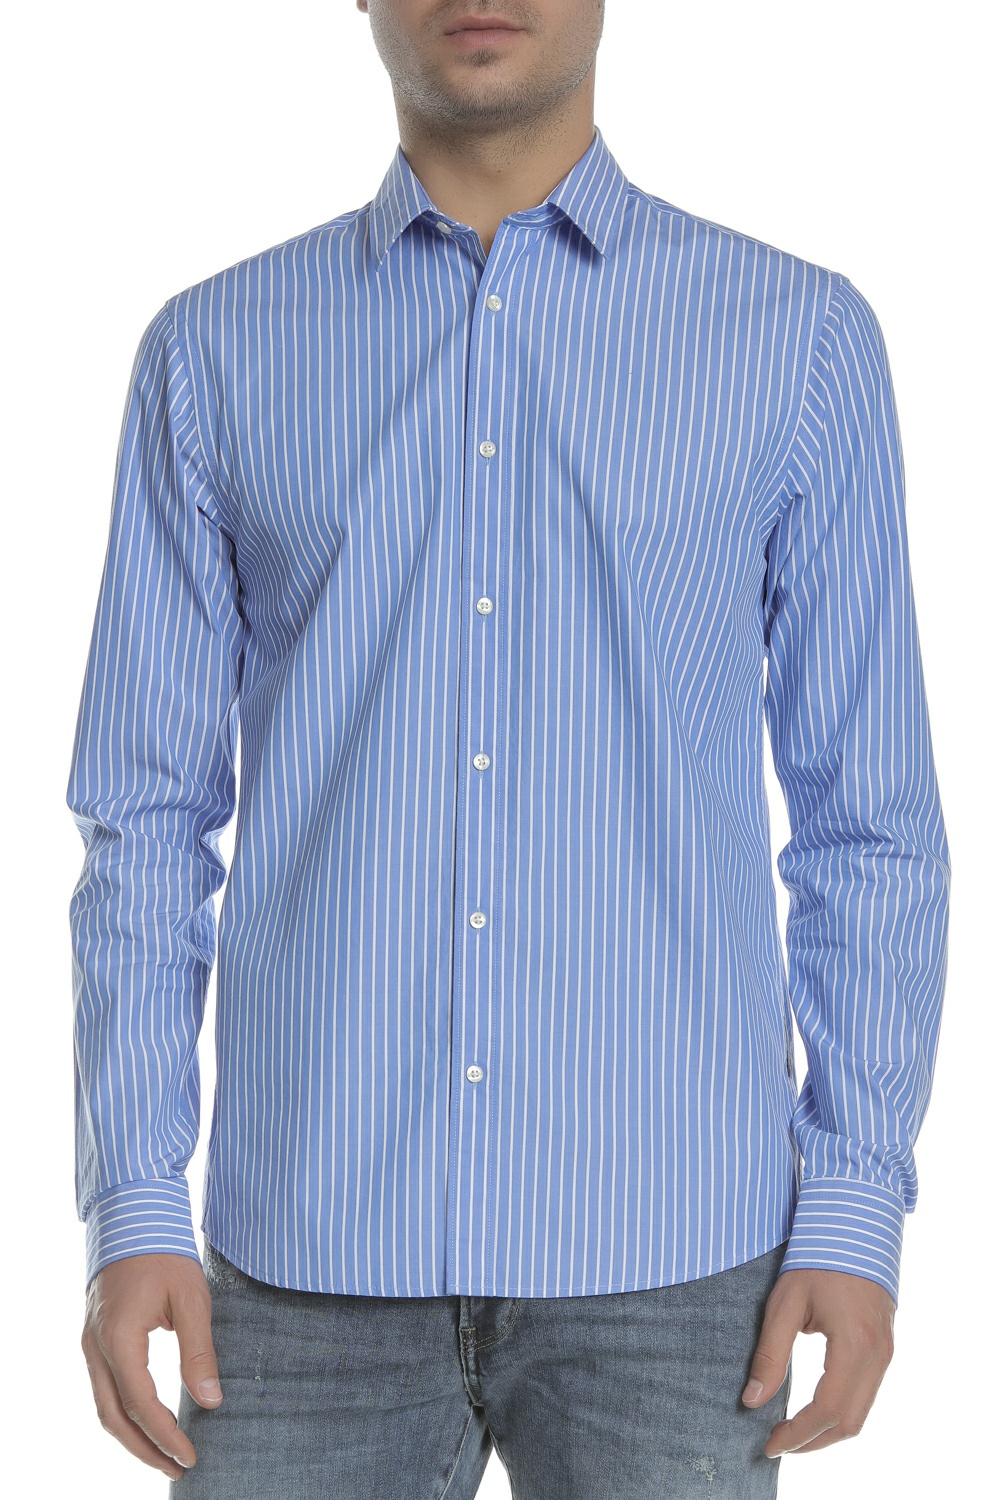 Ανδρικά/Ρούχα/Πουκάμισα/Μακρυμάνικα SCOTCH & SODA - Ανδρικό πουκάμισο REGULAR FIT - Chic yarn-dye sh μπλε